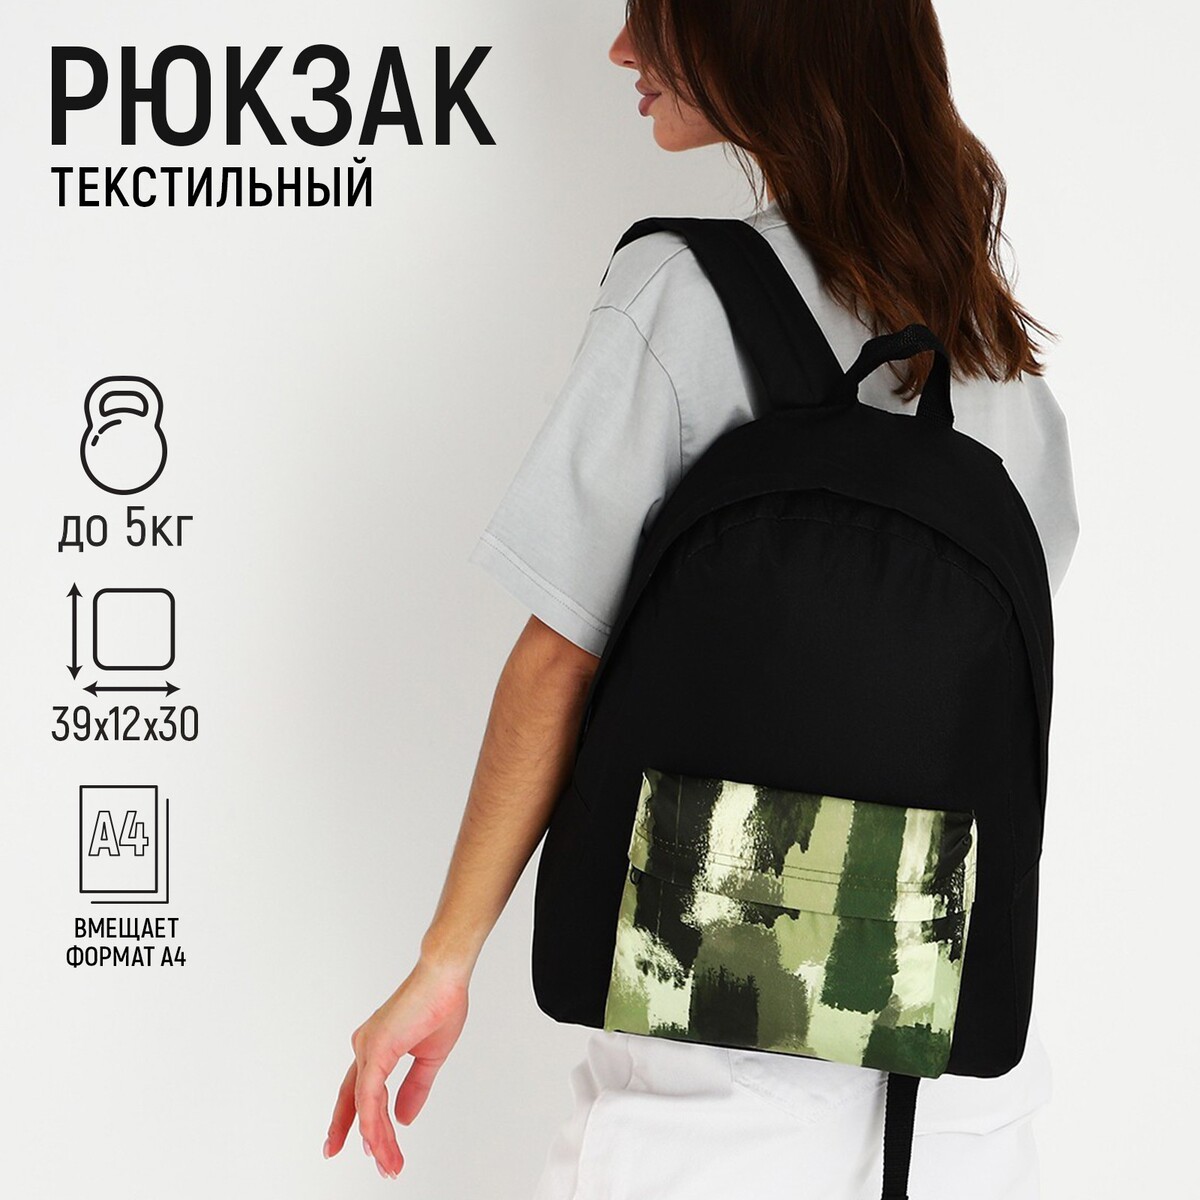 Рюкзак текстильный хаки, с карманом, 30х12х40см, цвет черный, зеленый рюкзак текстильный хаки с карманом 30х12х40см зеленый